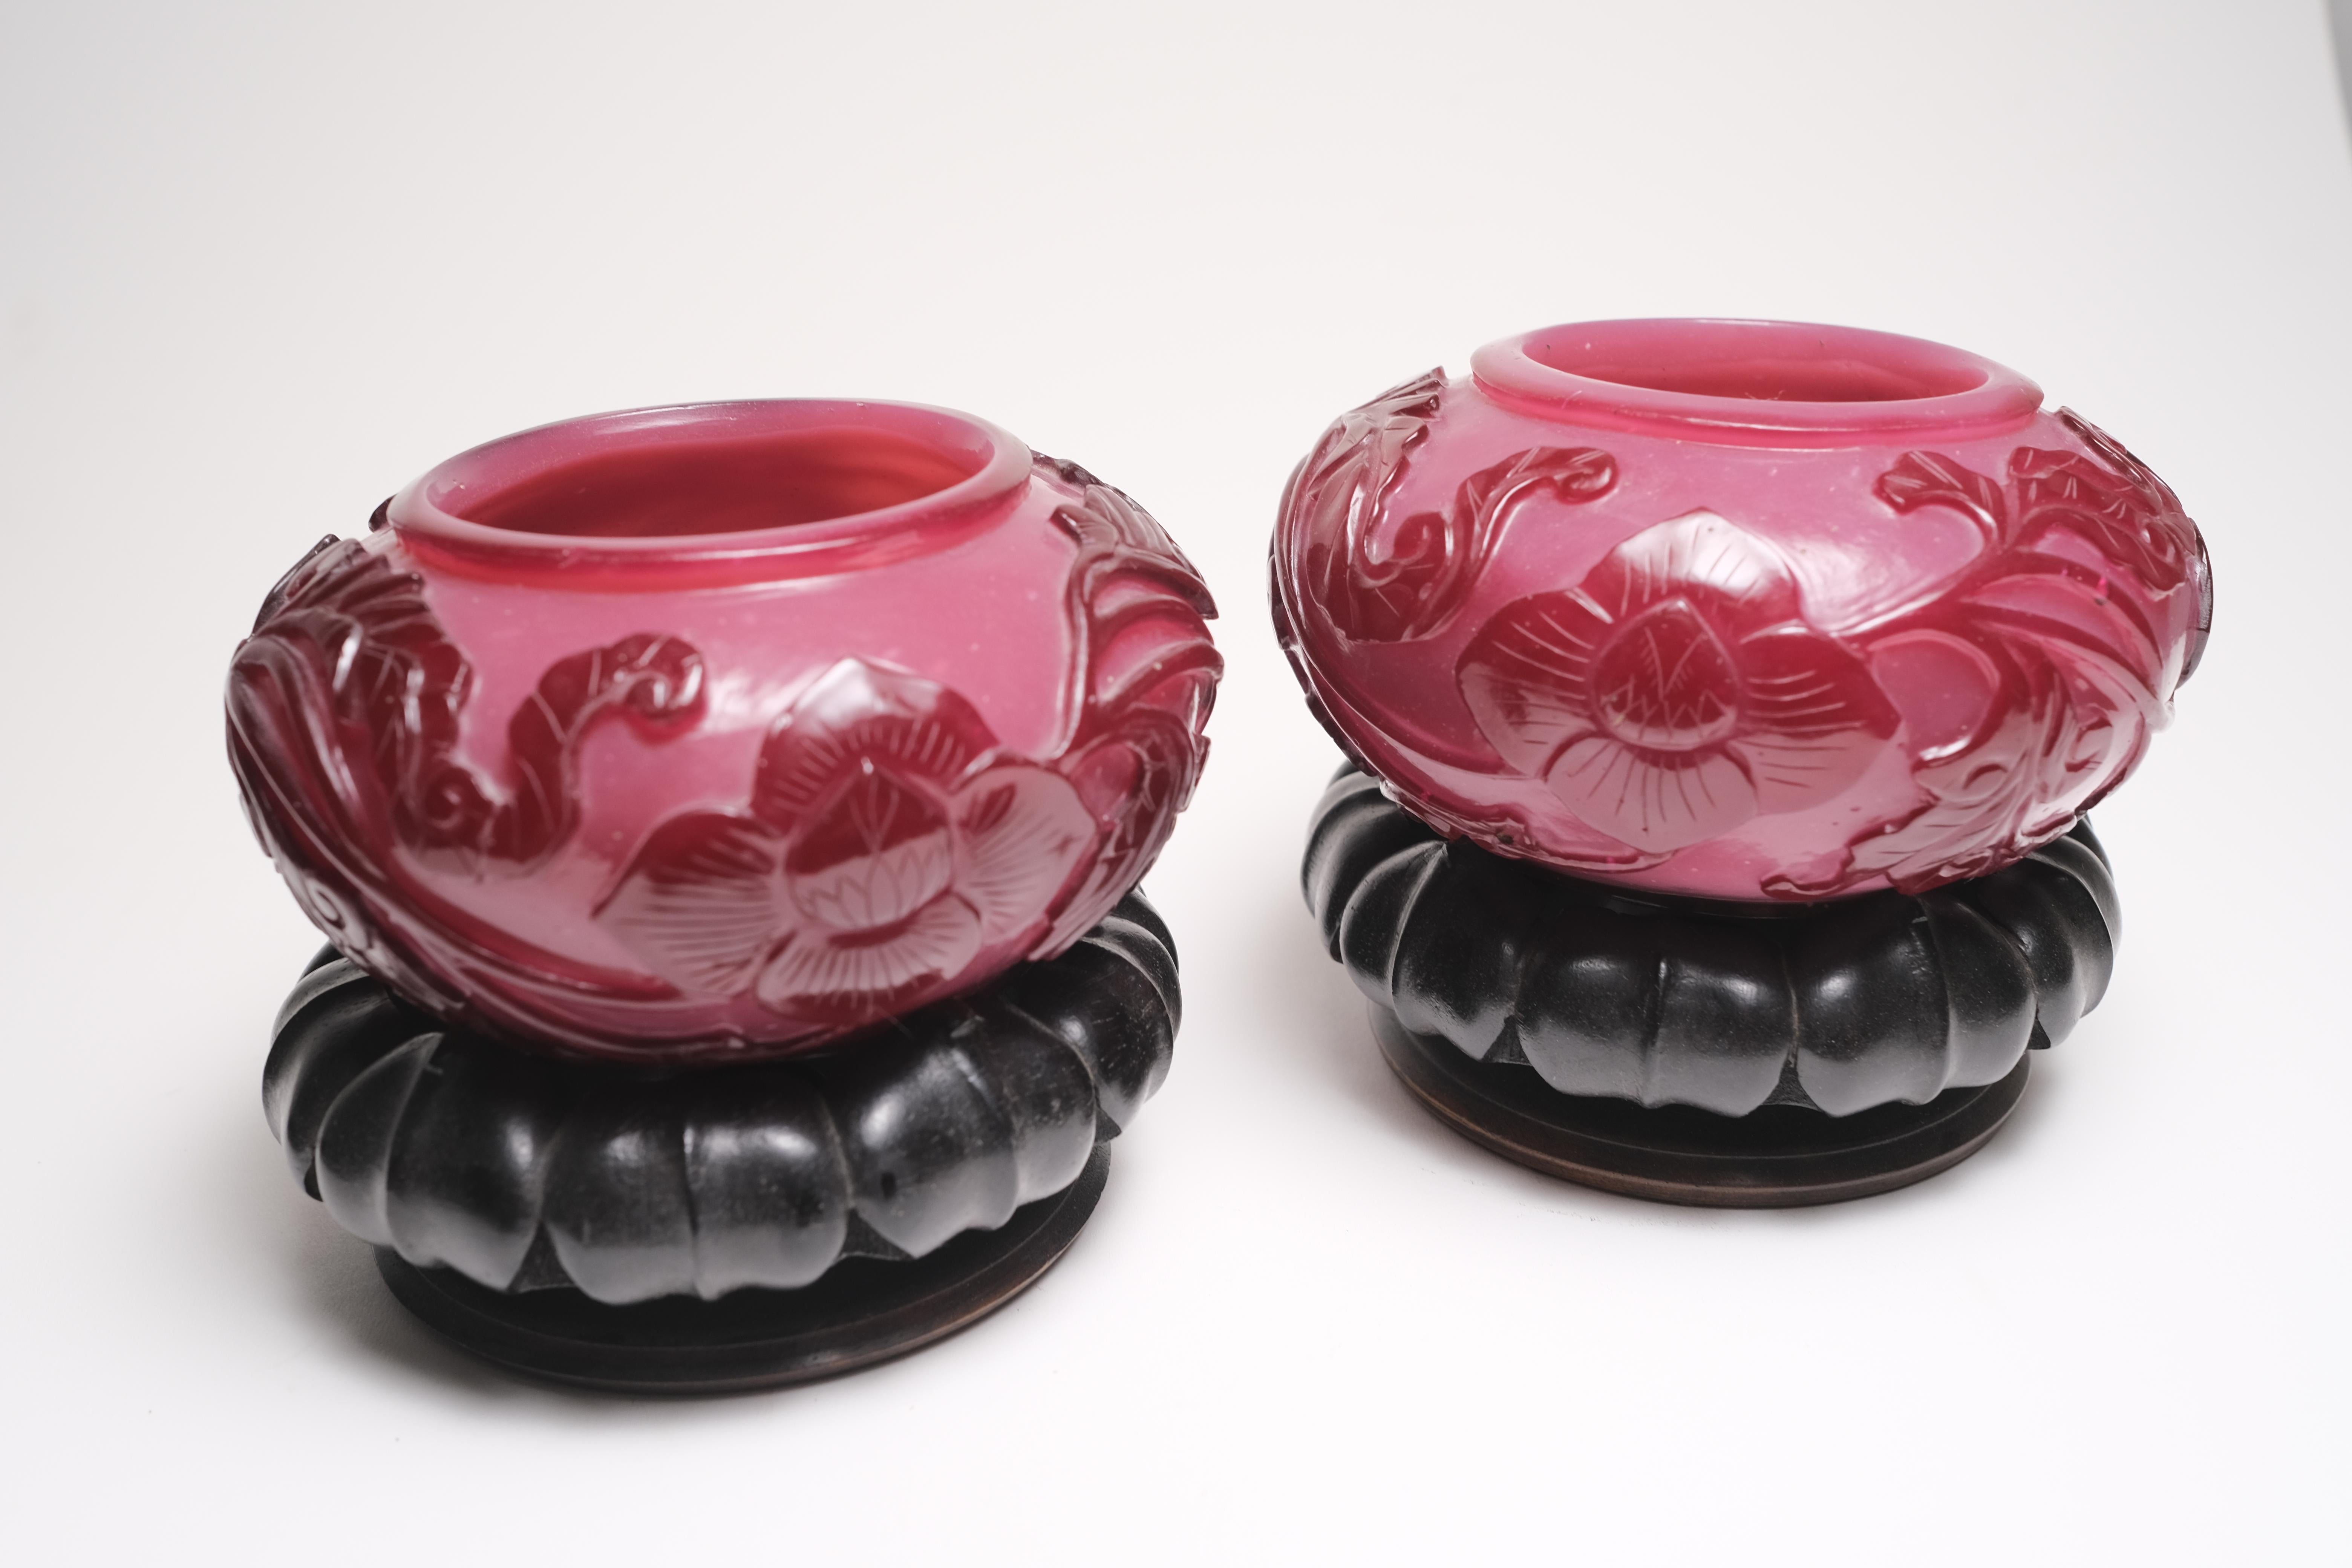 Forme rare. Petites urnes en verre de Pékin sur des supports chinois en bois sculpté. Probablement du 18e siècle. Les supports en bois sculpté ne sont pas d'origine.